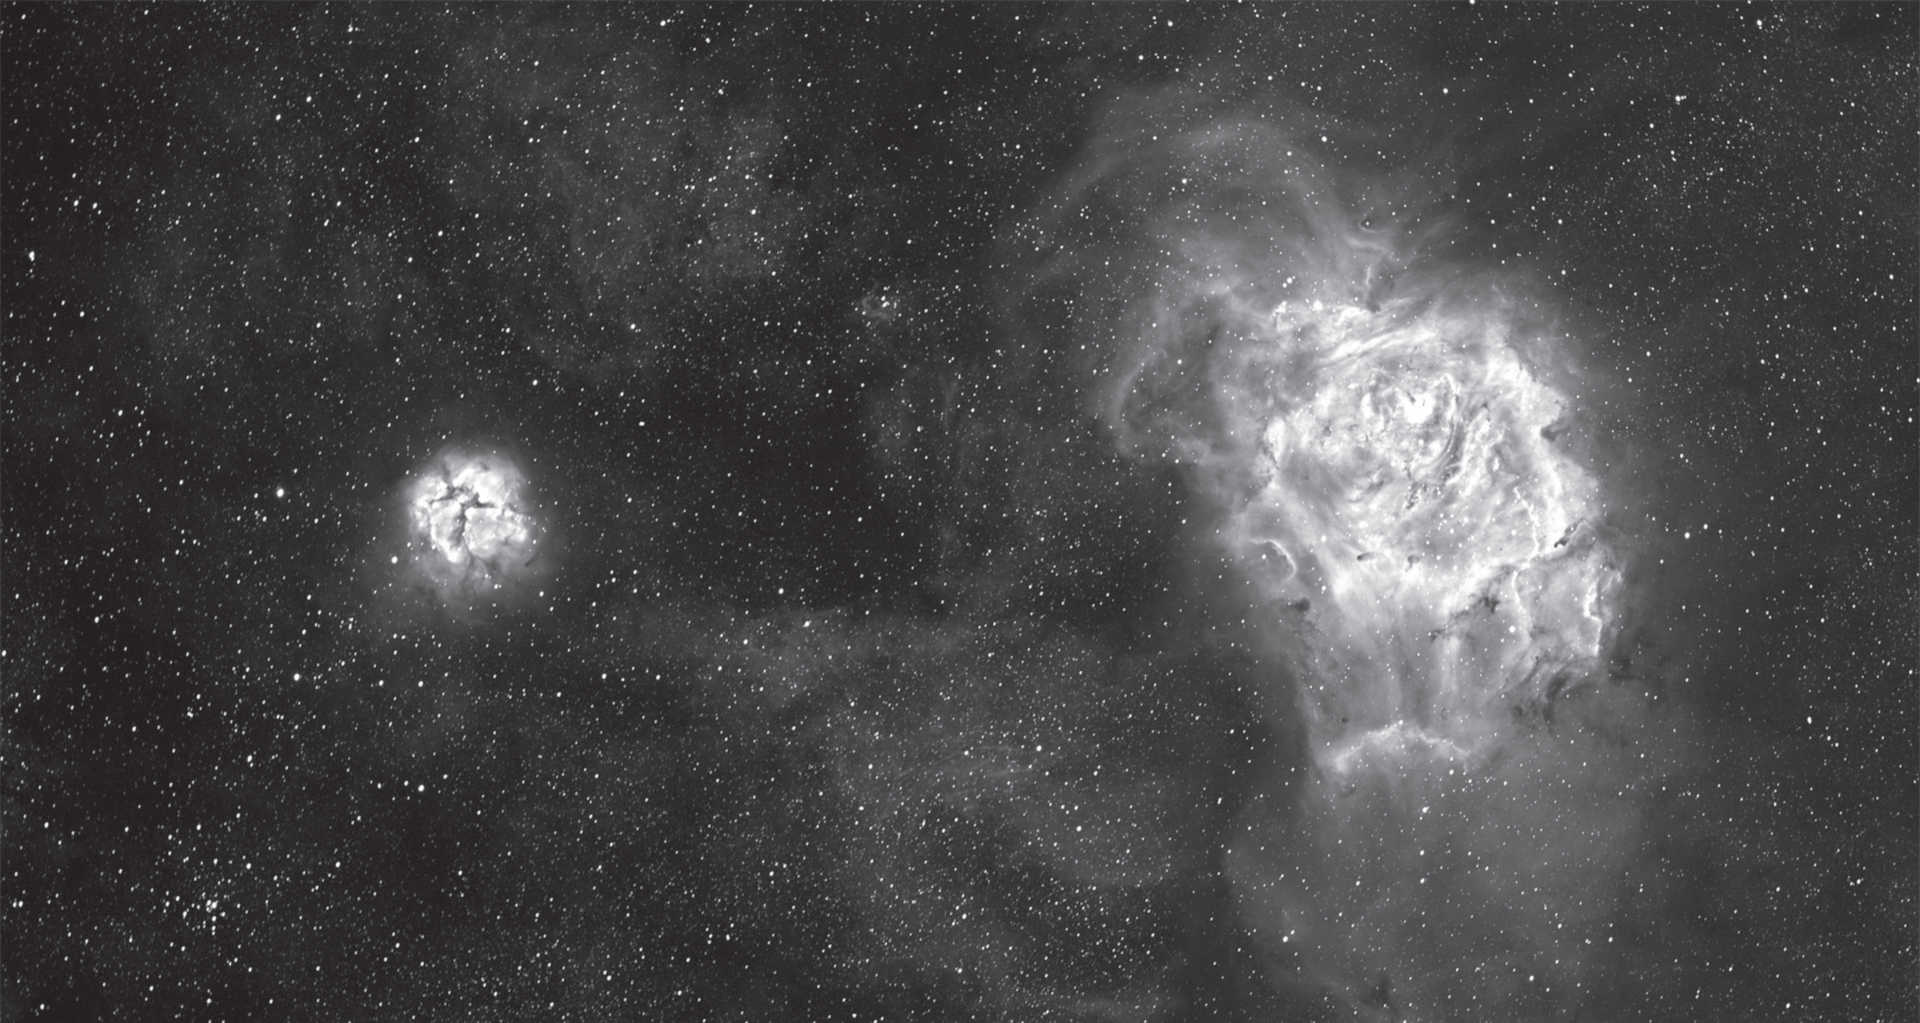 Der Lagunennebel und der Trifidnebel (M 8 und M 20) im Sternbild Schütze. Summenbild
aus je sechs Aufnahmen mit einer Belichtungszeit von je 1 Minute, sechs Aufnahmen mit einer Belichtungszeit
von je 15 Minuten und 2 Aufnahmen mit einer Belichtungszeit von je 60 Minuten. Kamera:
SBIG STF-8300, Hα-Filter mit 35nm Durchlass, Teleskop: 130mm-Refraktor bei 1000mm Brennweite. U. Dittler